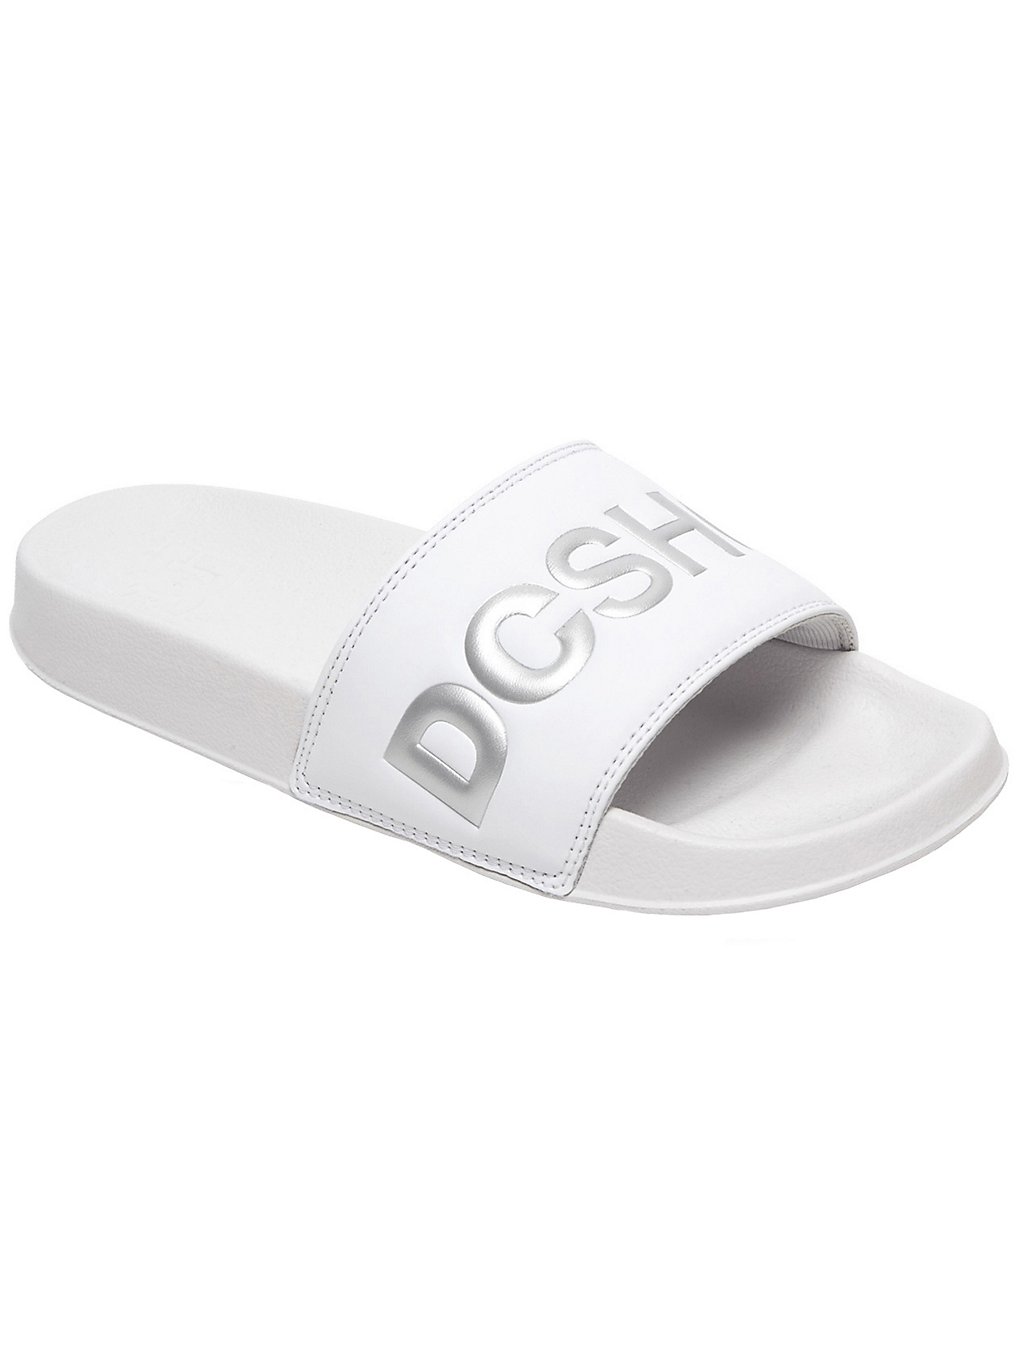 DC Slide SE Sandals blanc